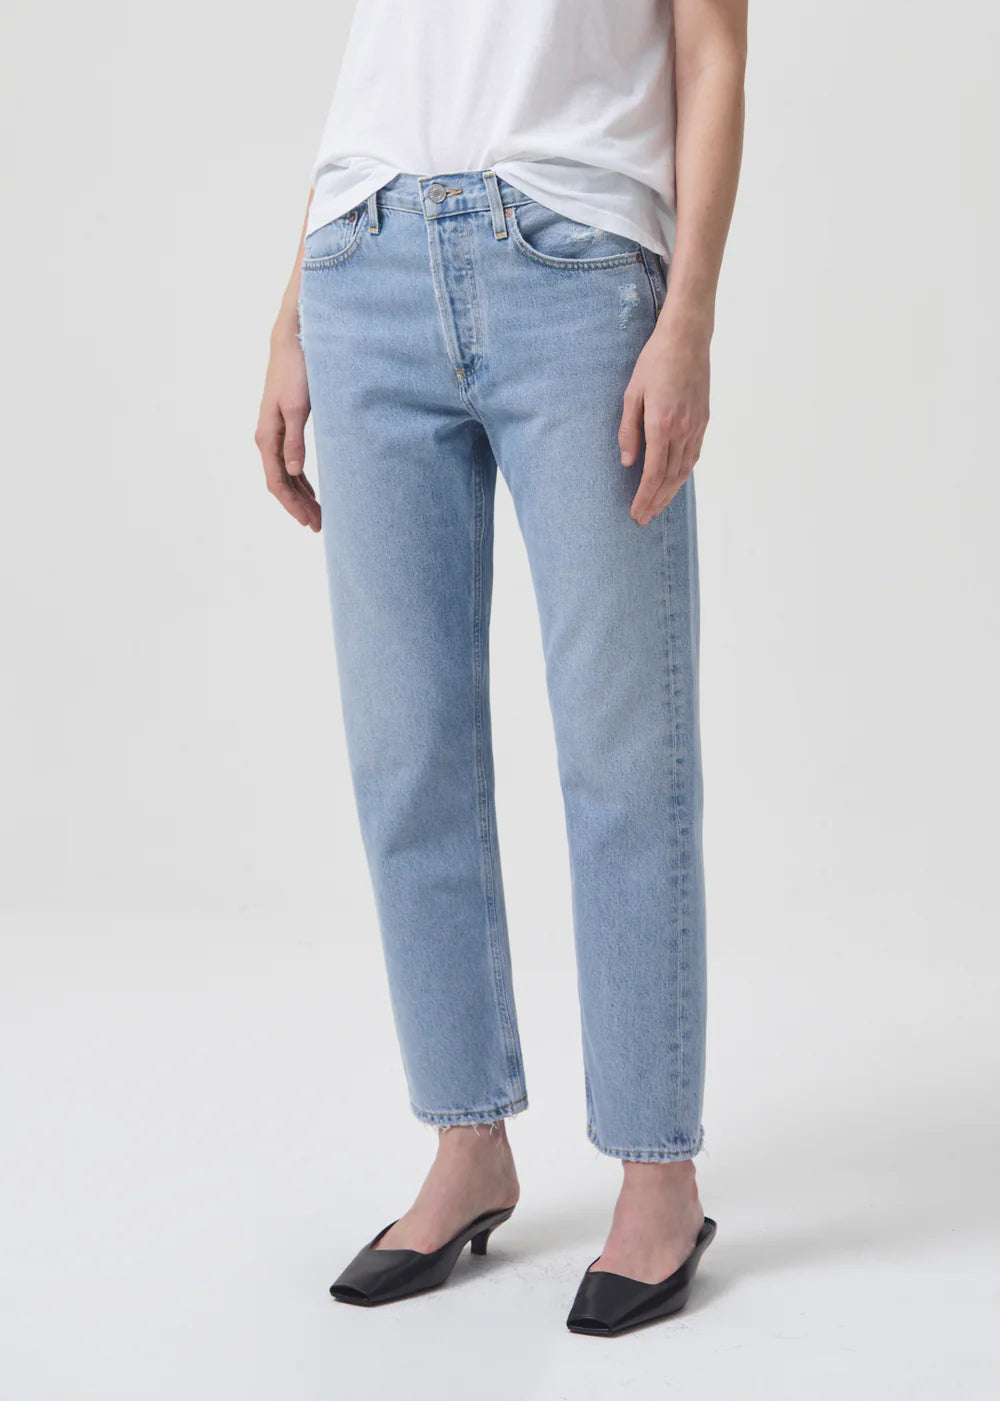 The model is wearing AGOLDE Parker Jean - Swapmeet blue jeans.